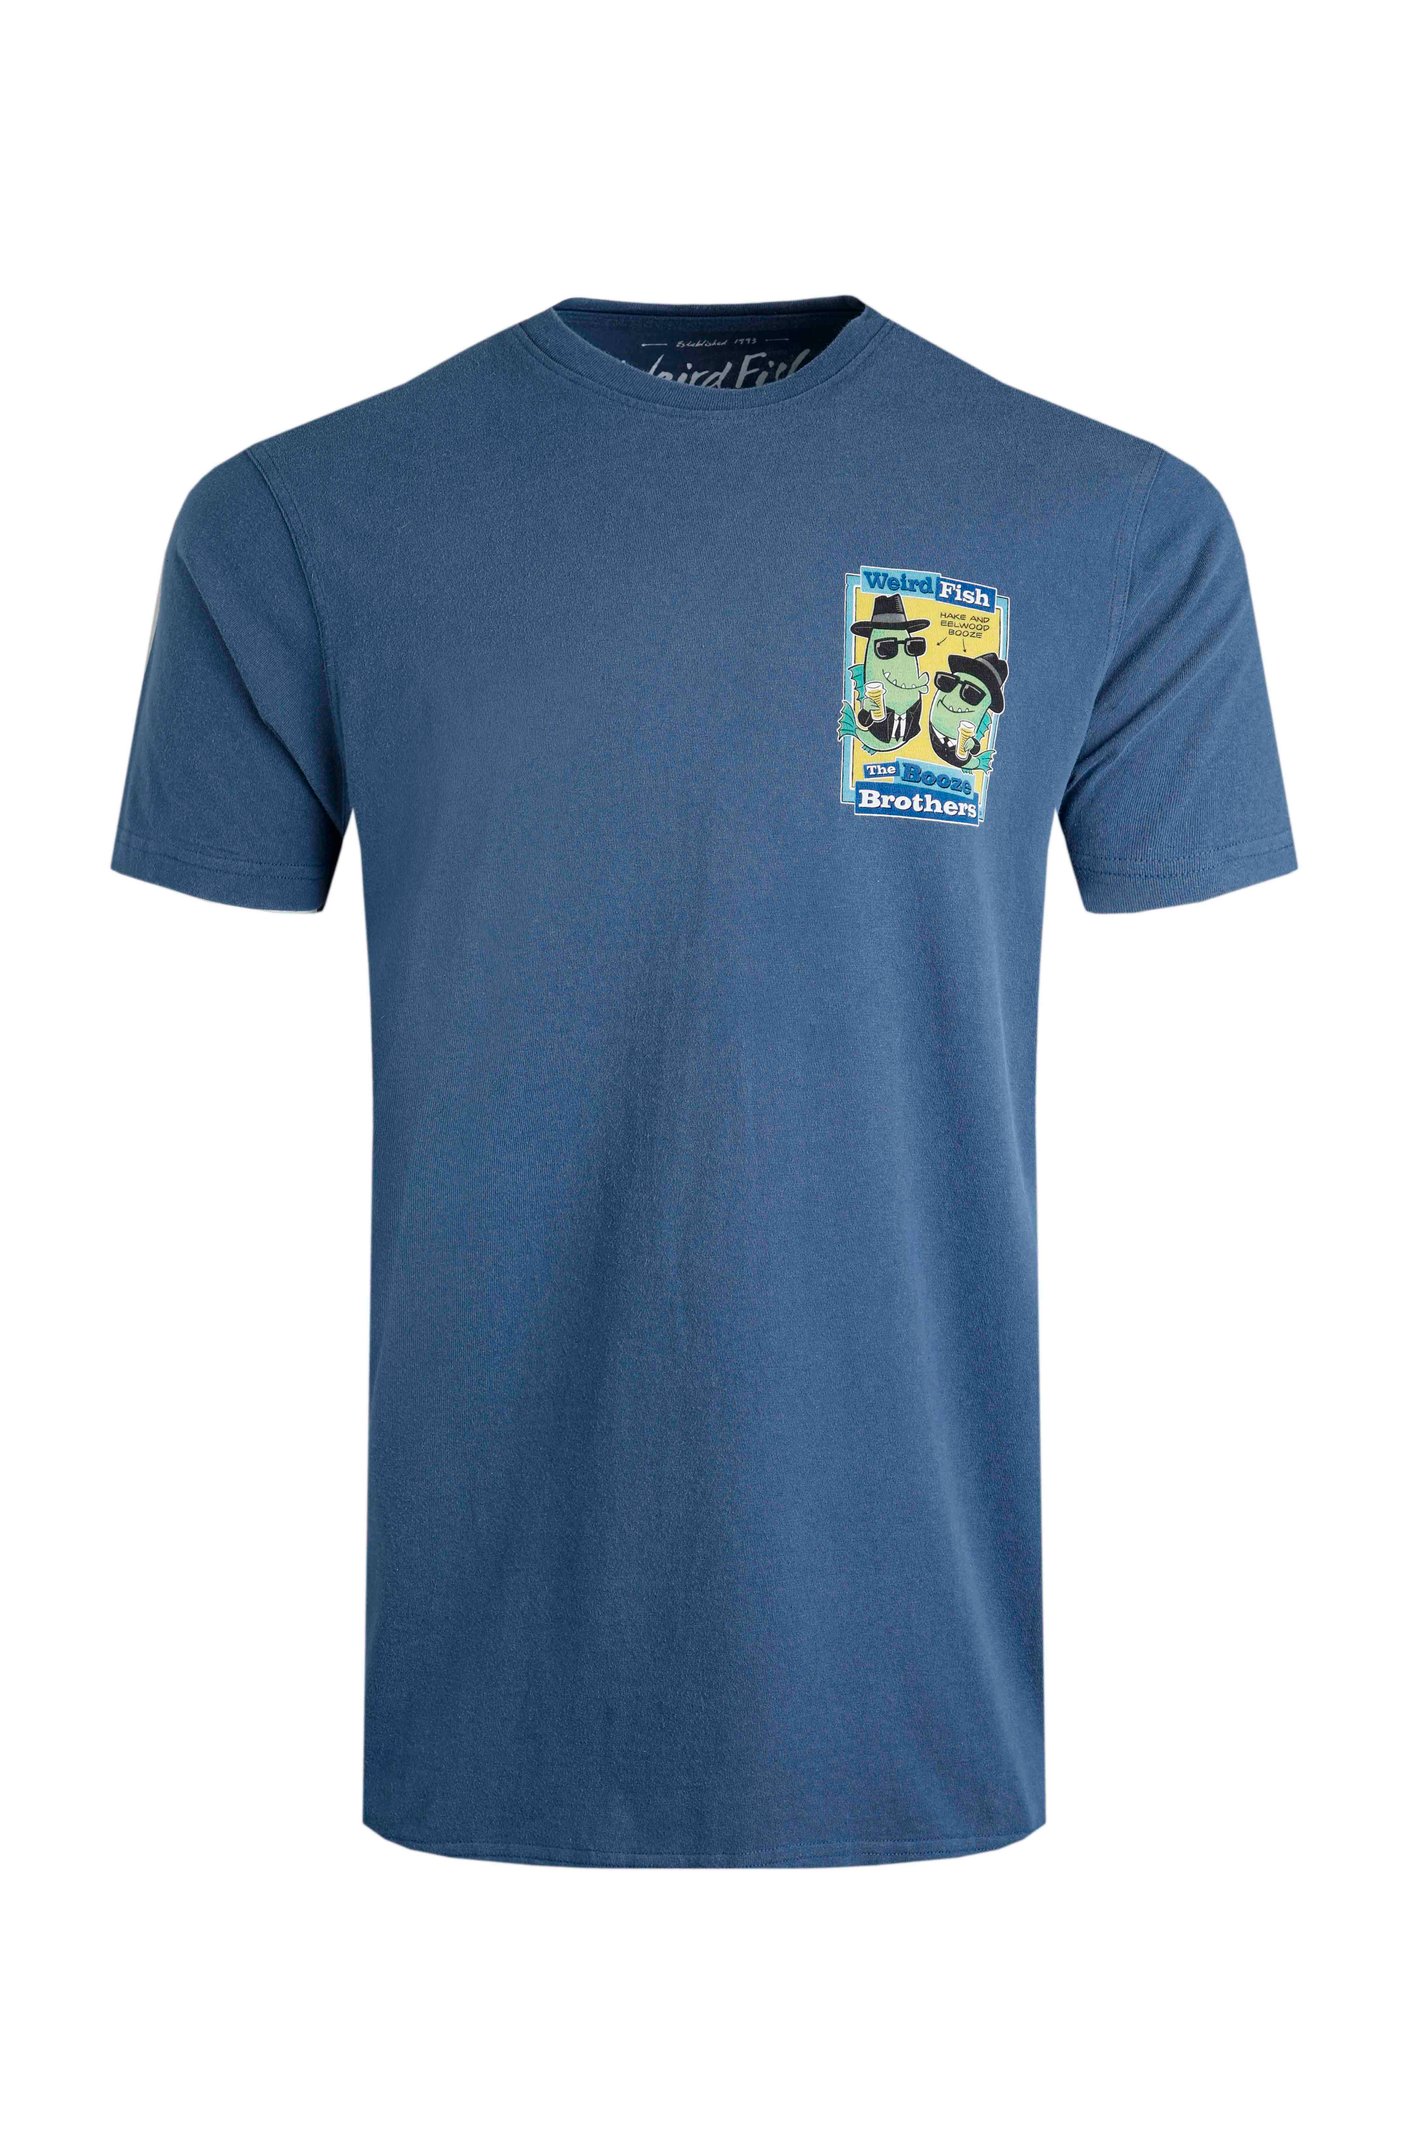 Weird Fish Booze Brothers Artist T-Shirt Ensign Blue Size 5XL